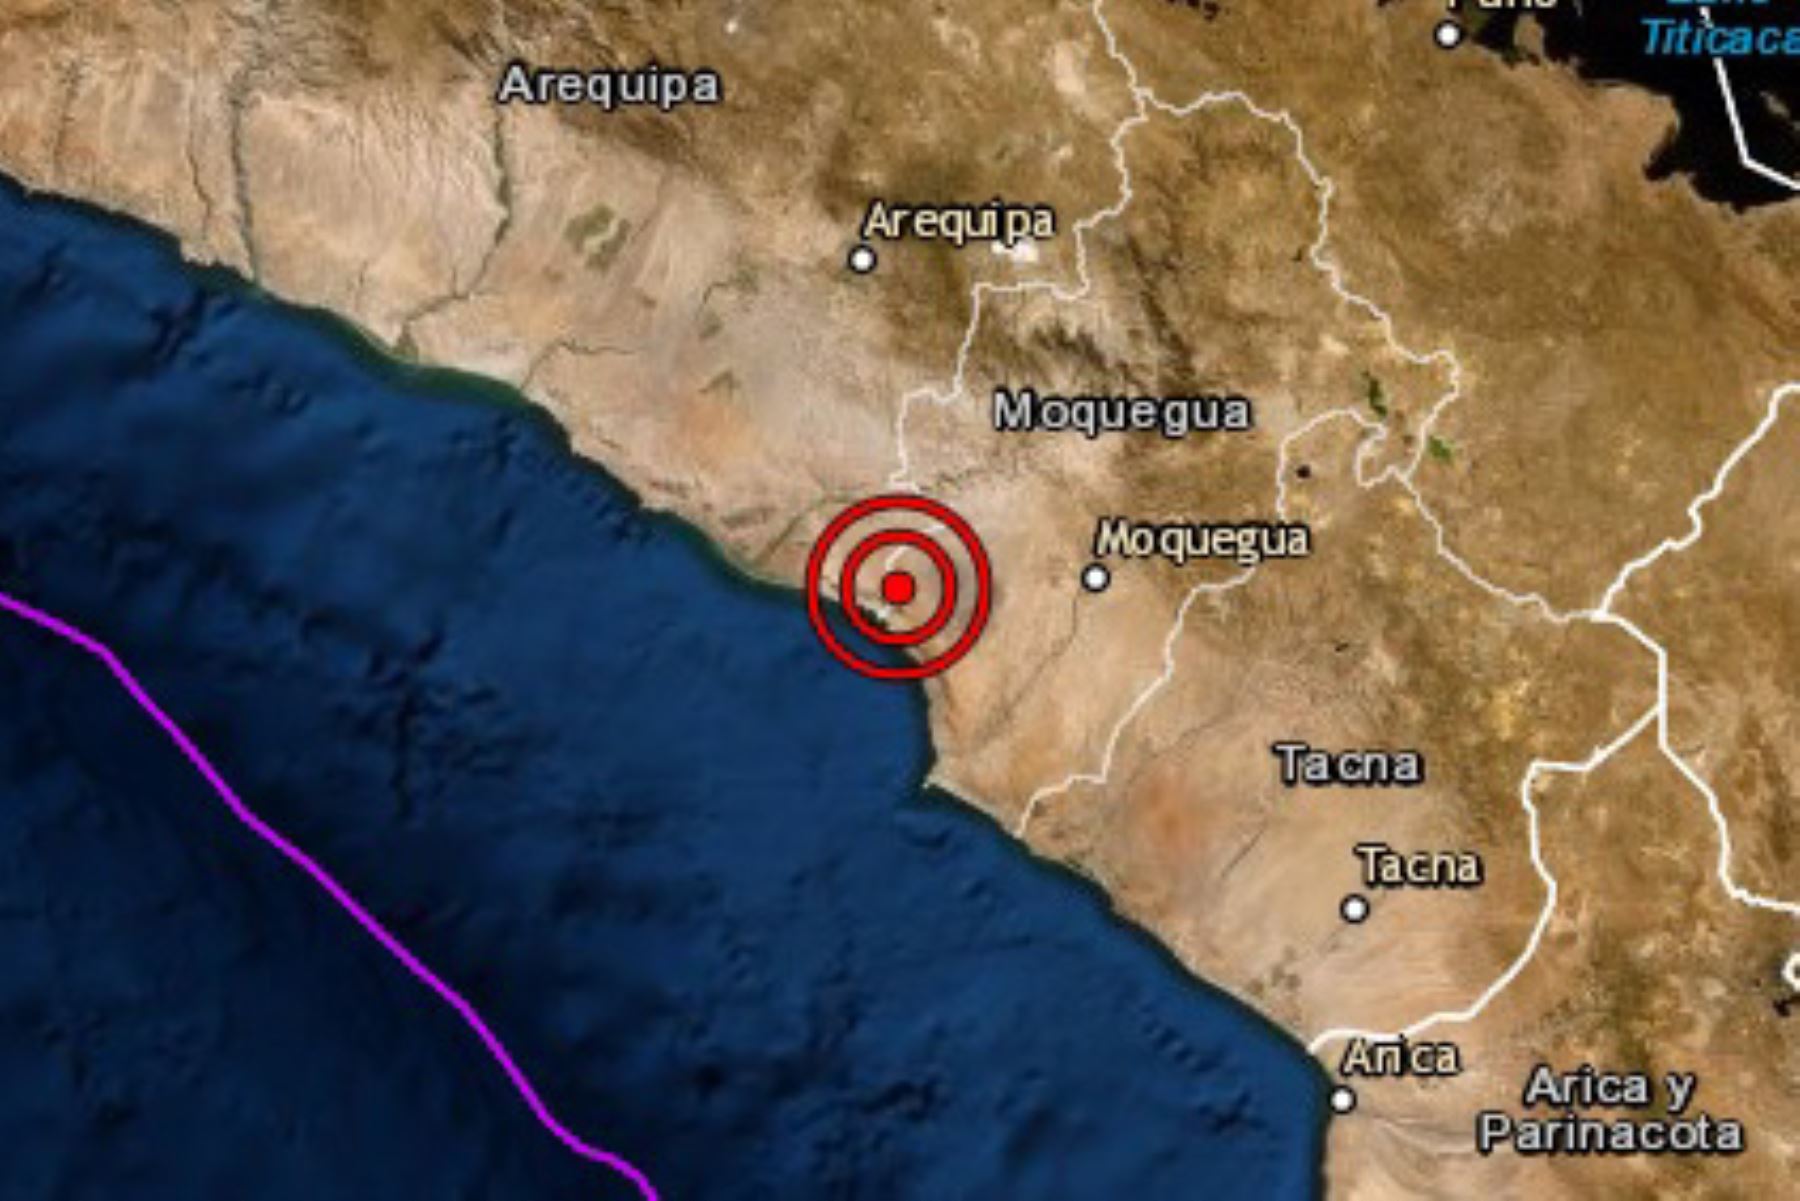 Un sismo de magnitud 4.0 se registró hoy en el departamento de Arequipa, el séptimo movimiento telúrico reportado en esta región y el número 33 en el país en lo que va del año, informó el Instituto Geofísico del Perú (IGP).